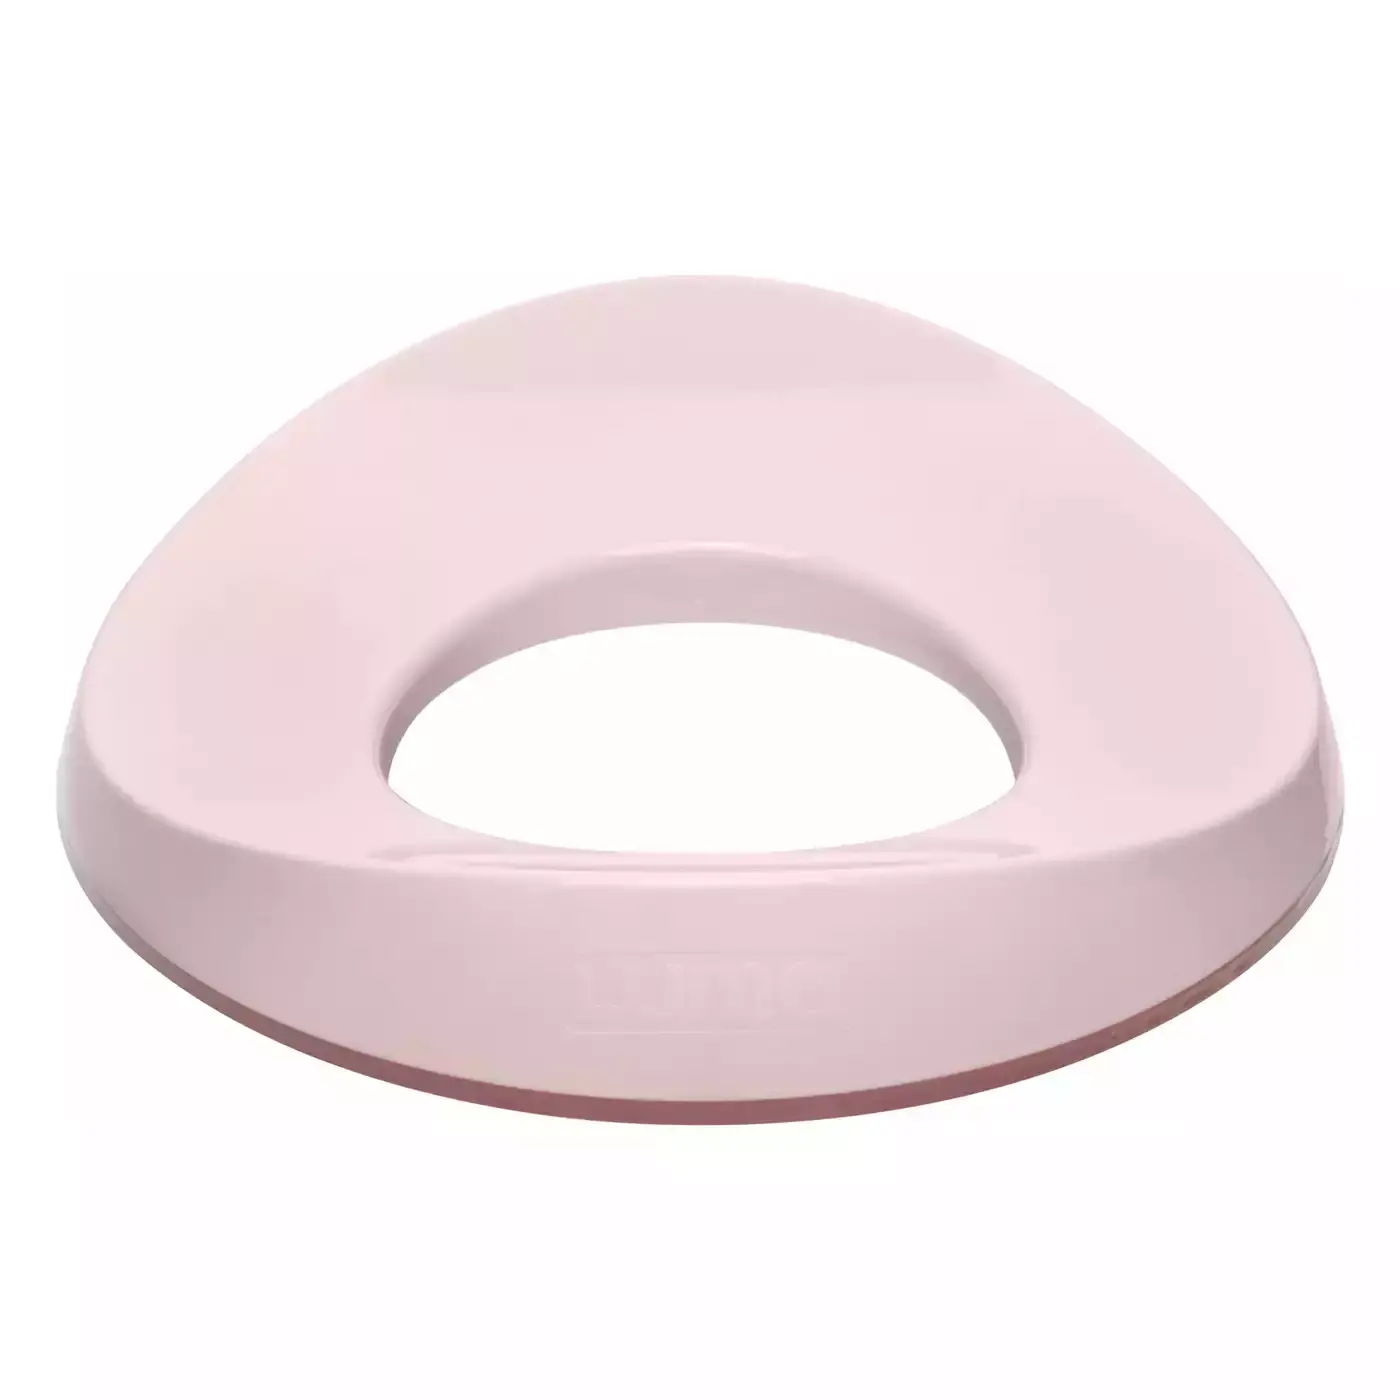 Toilettensitz Blossom Pink LUMA Rosa 2000580262902 1